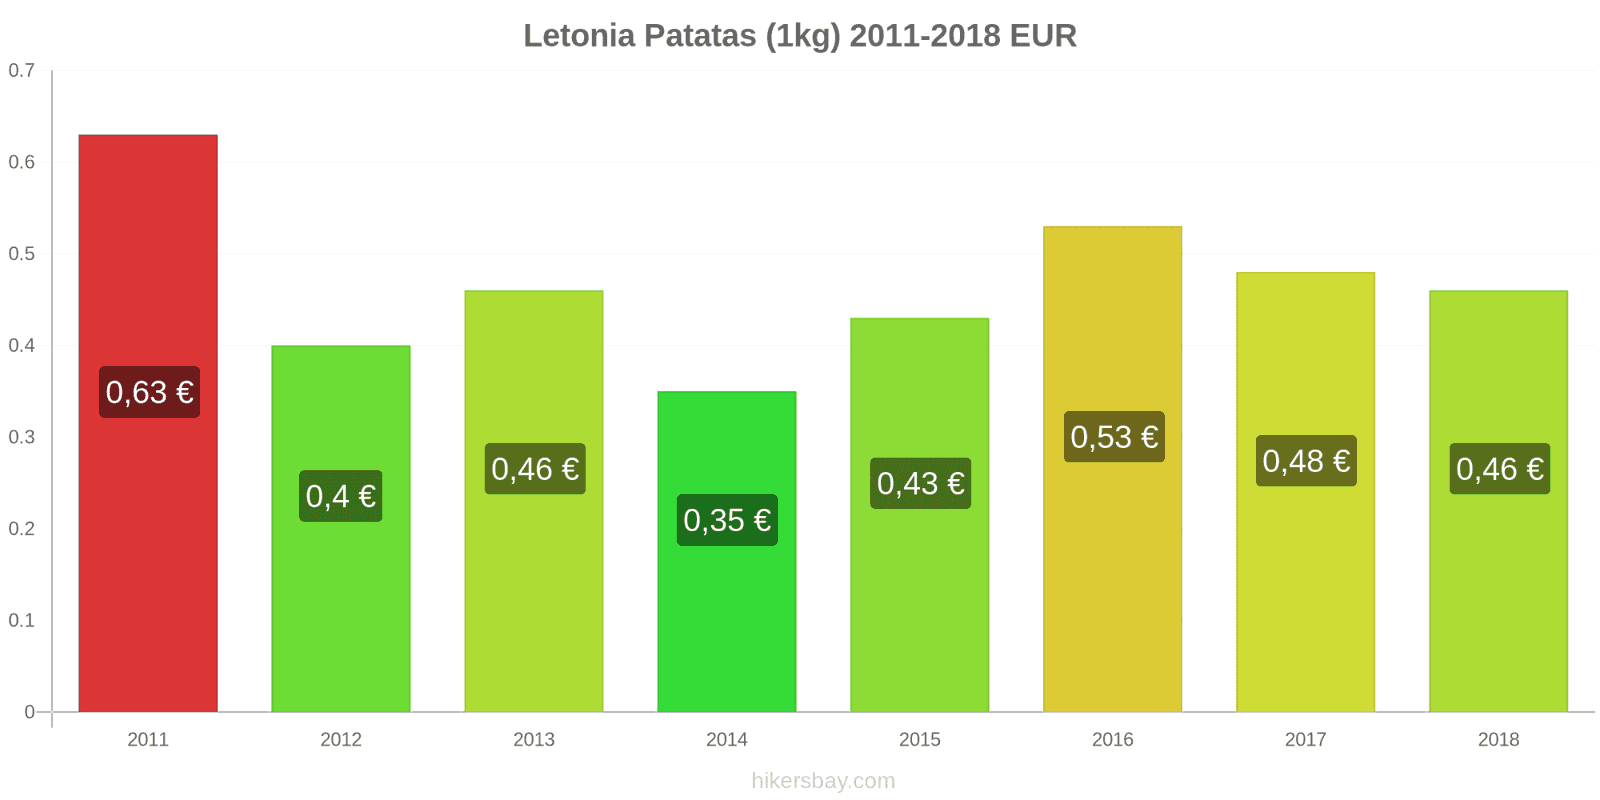 Letonia cambios de precios Patatas (1kg) hikersbay.com